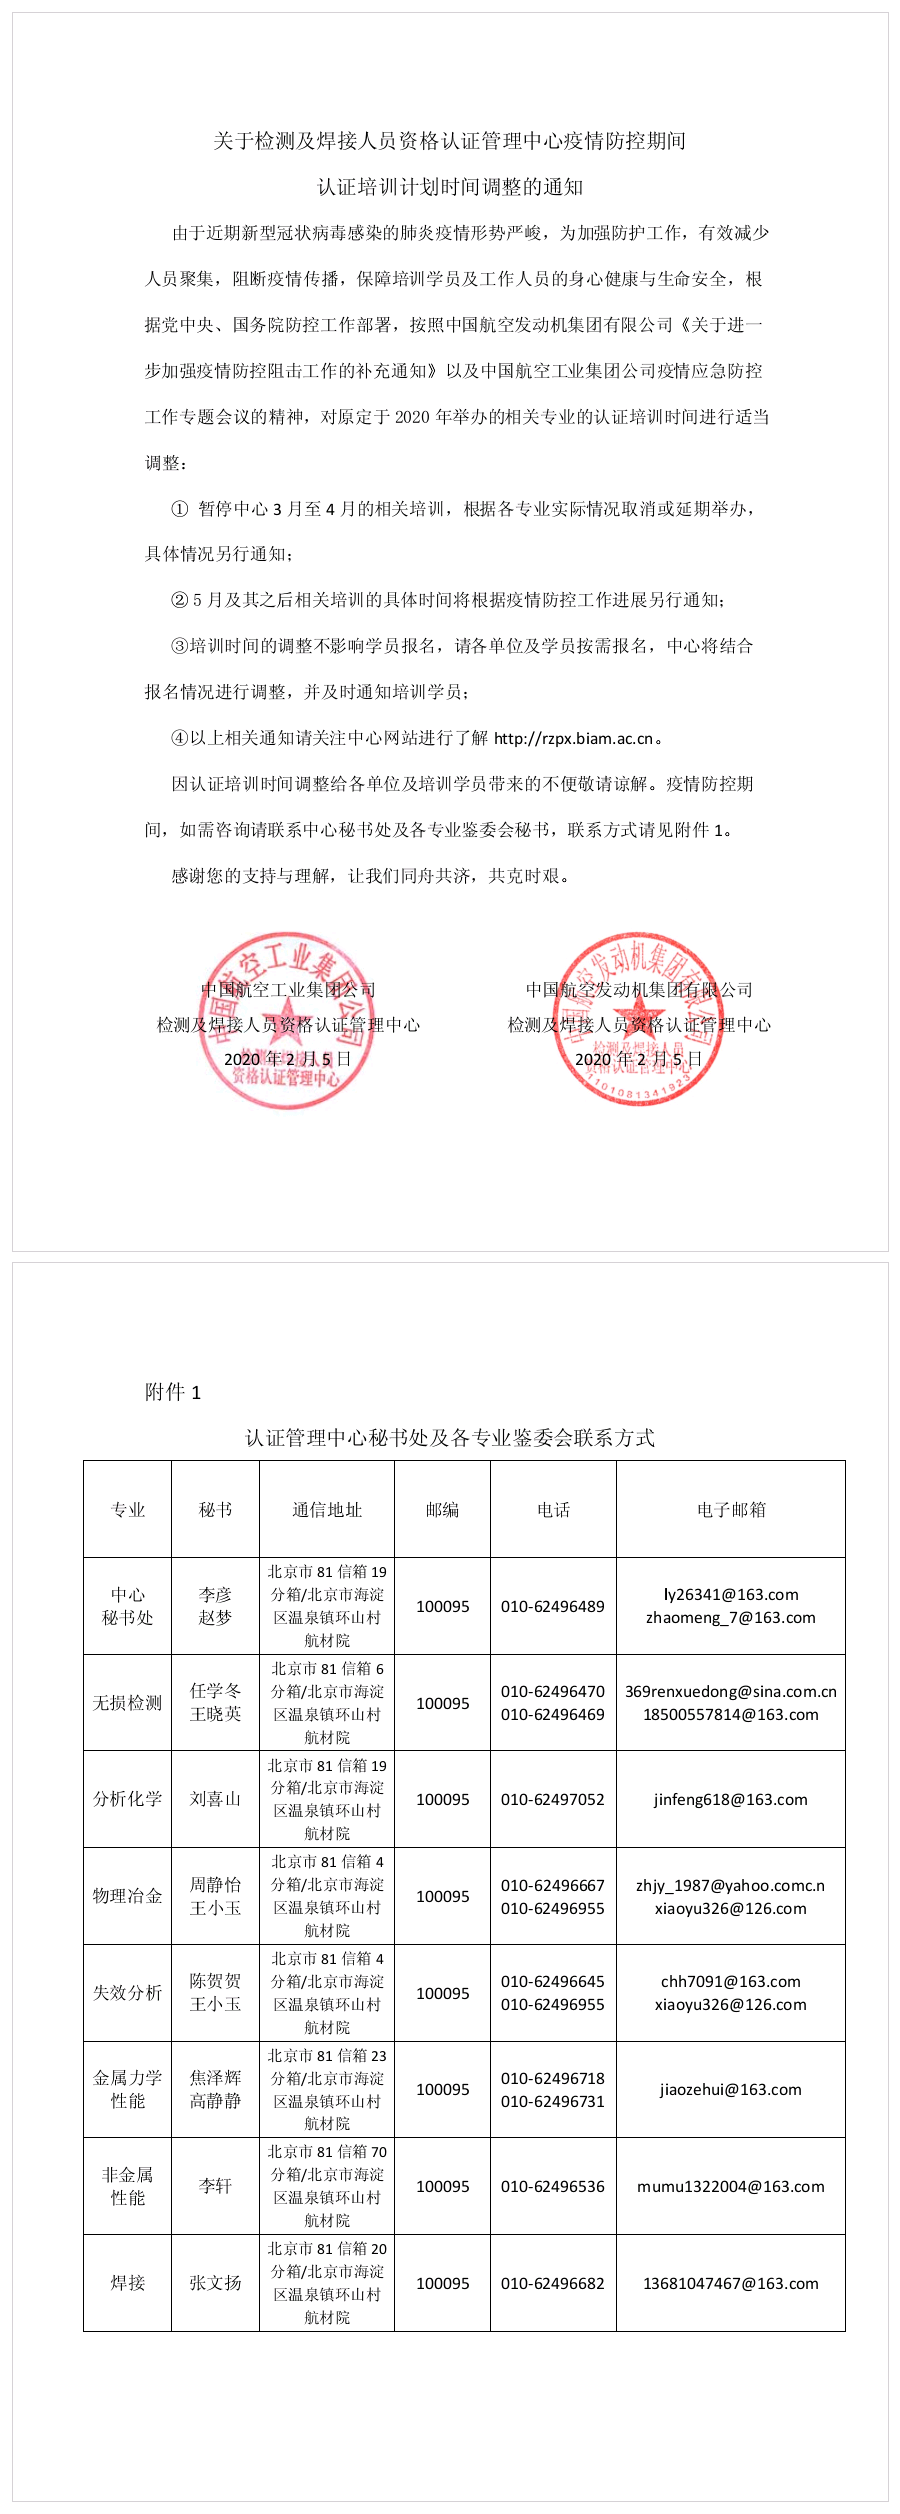 中国航空工业集团公司关于检测及焊接人员资格认证管理中心疫情防控期间认证培训计划时.png